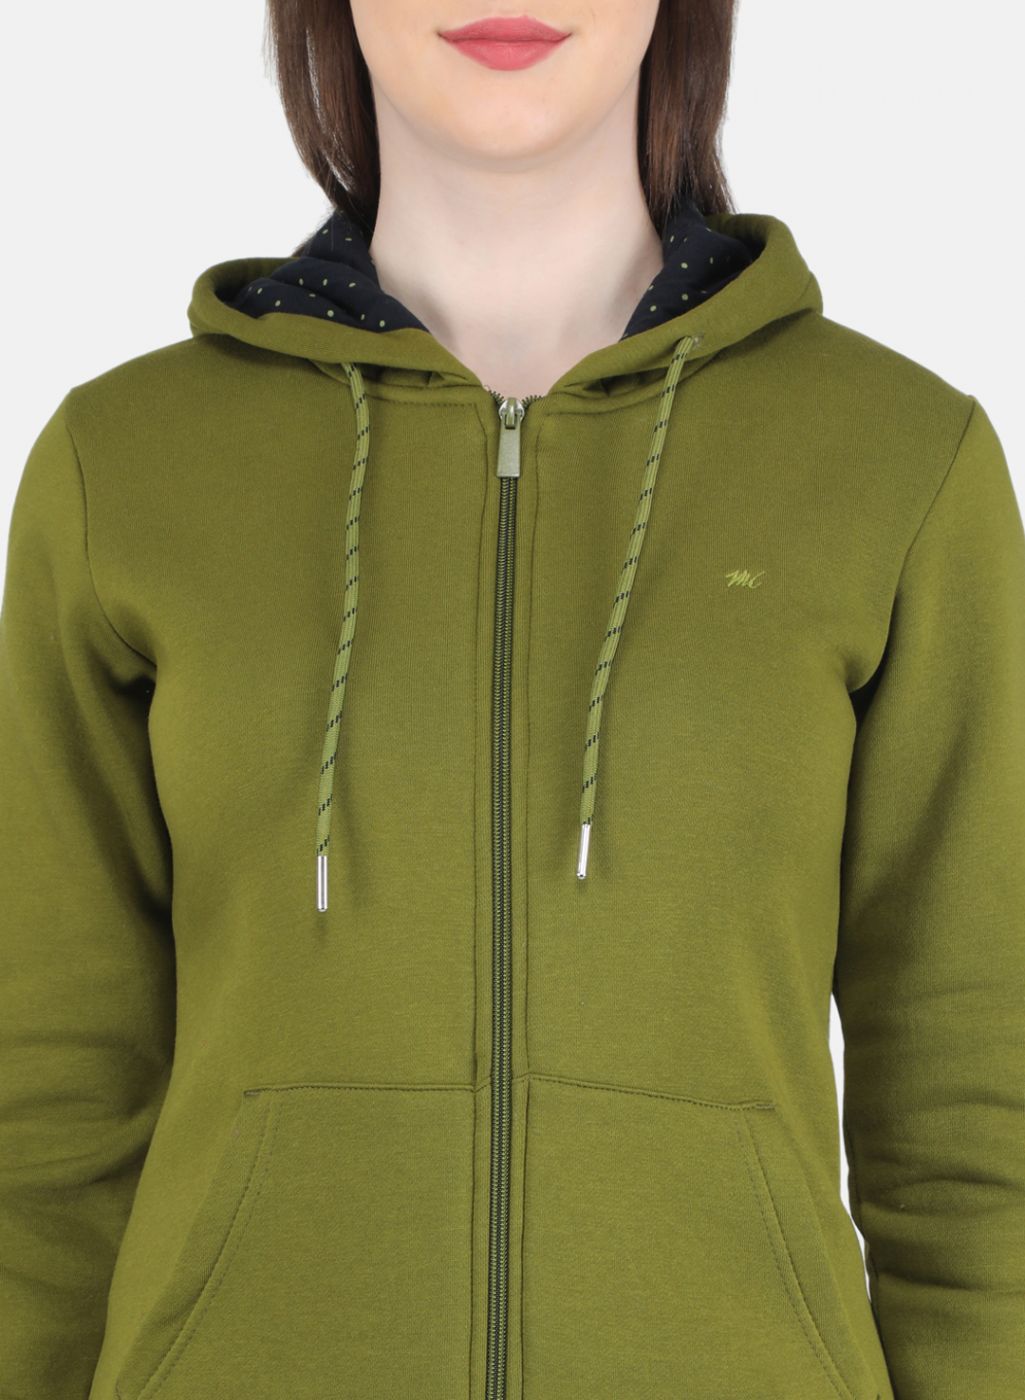 Buy Women Green Solid Sweatshirt Online in India - Monte Carlo